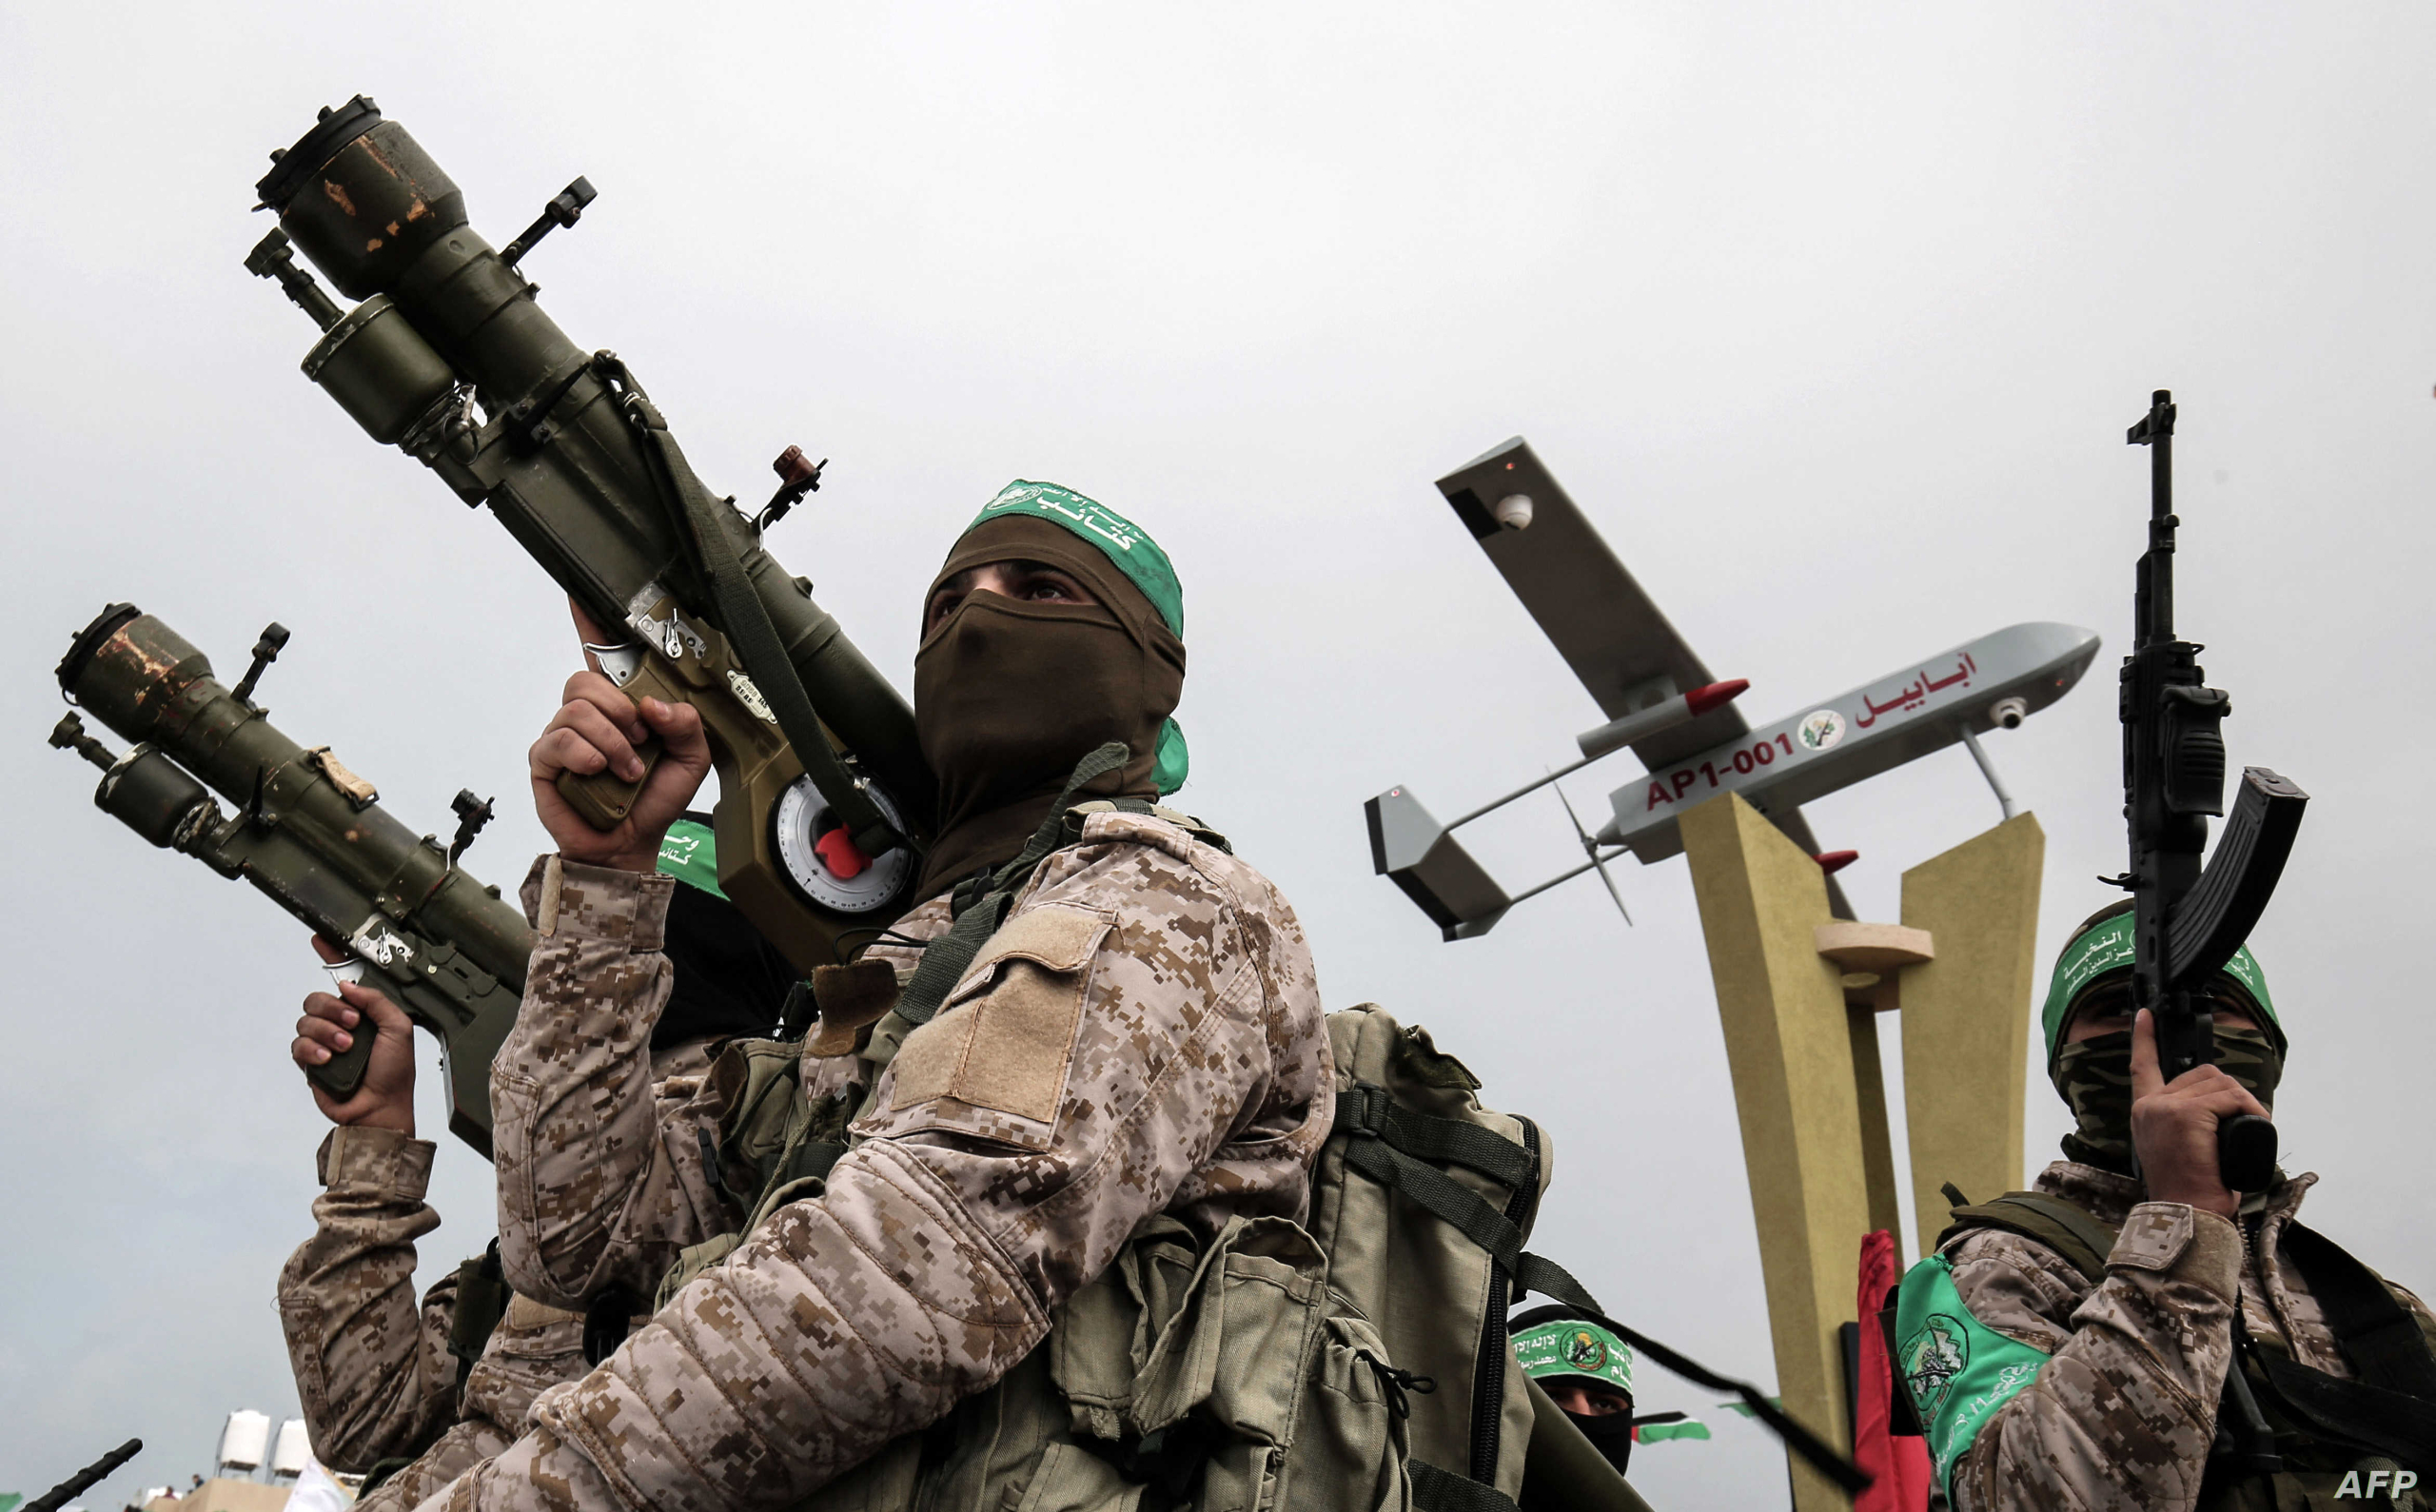 حركة حماس تهدد إسرائيل بـ”استباحة” الكنس اليهودية عبر العالم